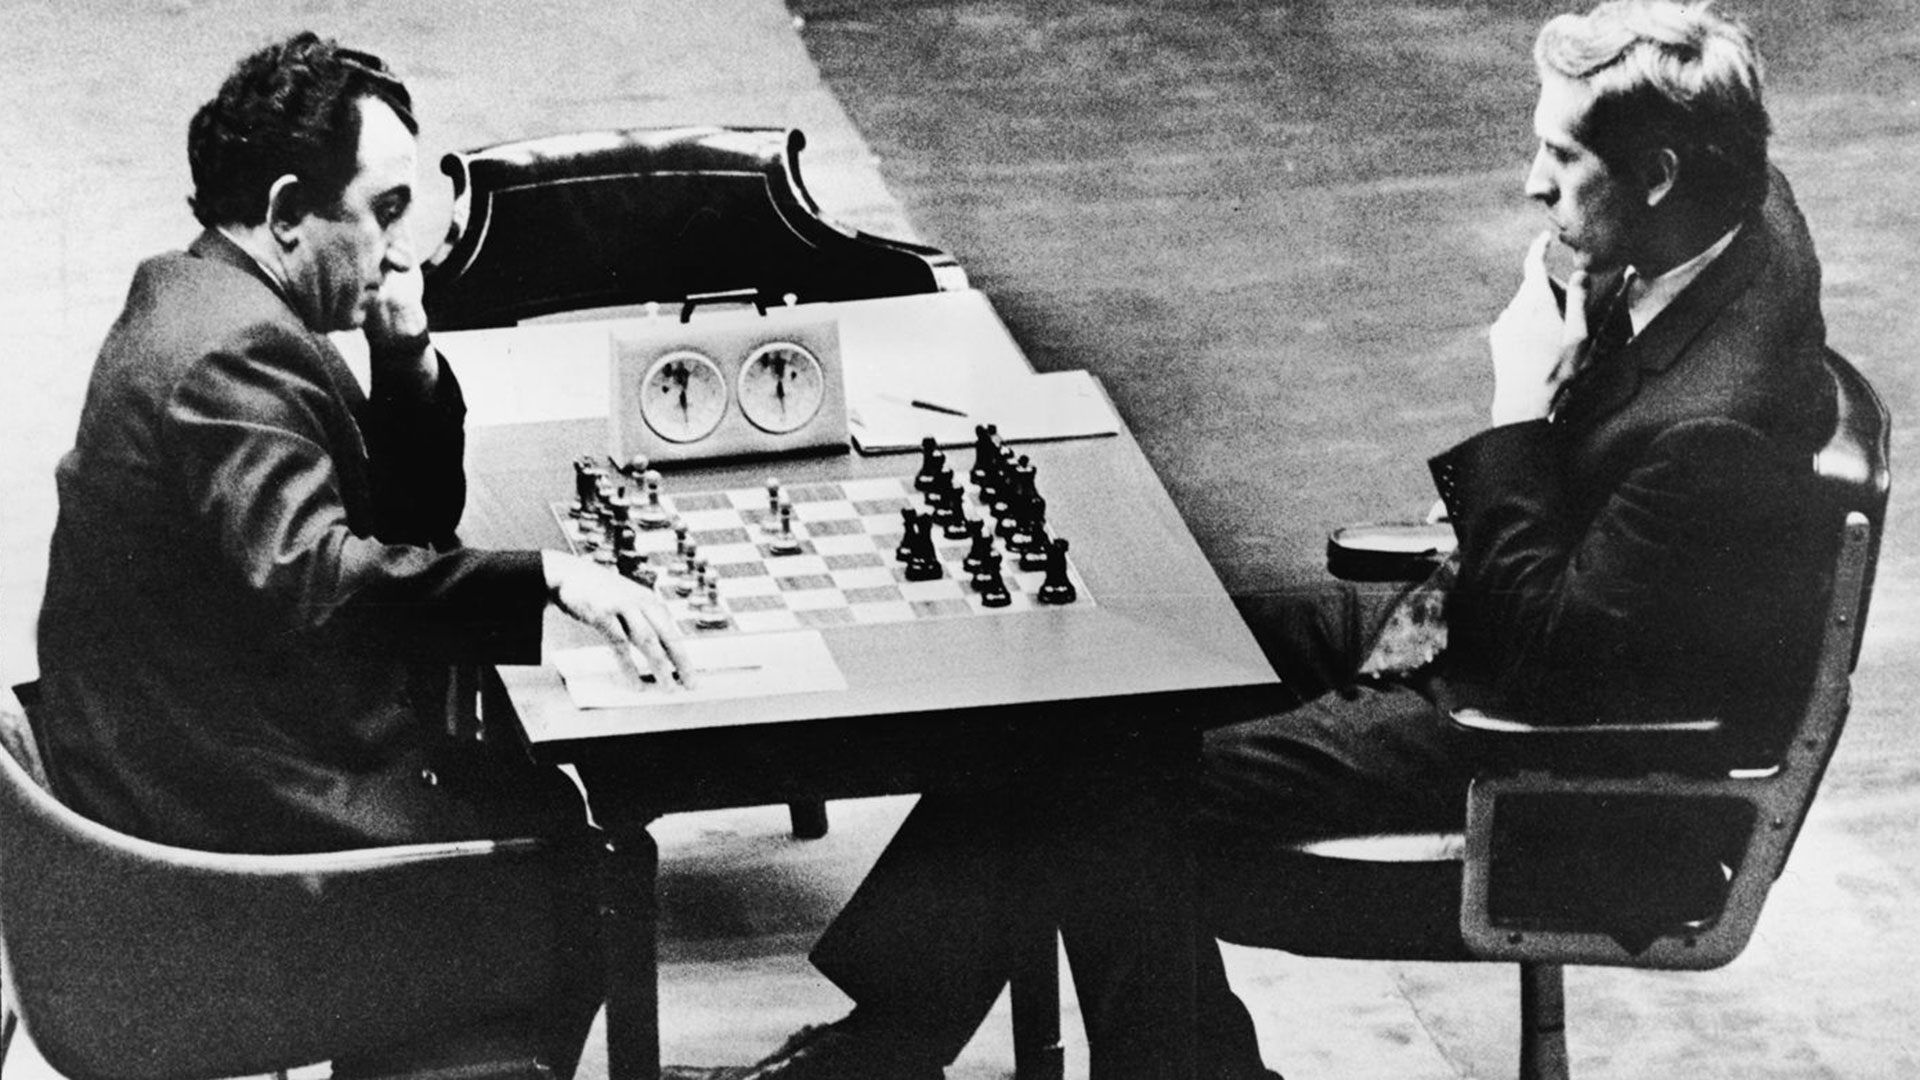 El legendario match entre Bobby Fischer y Spassky